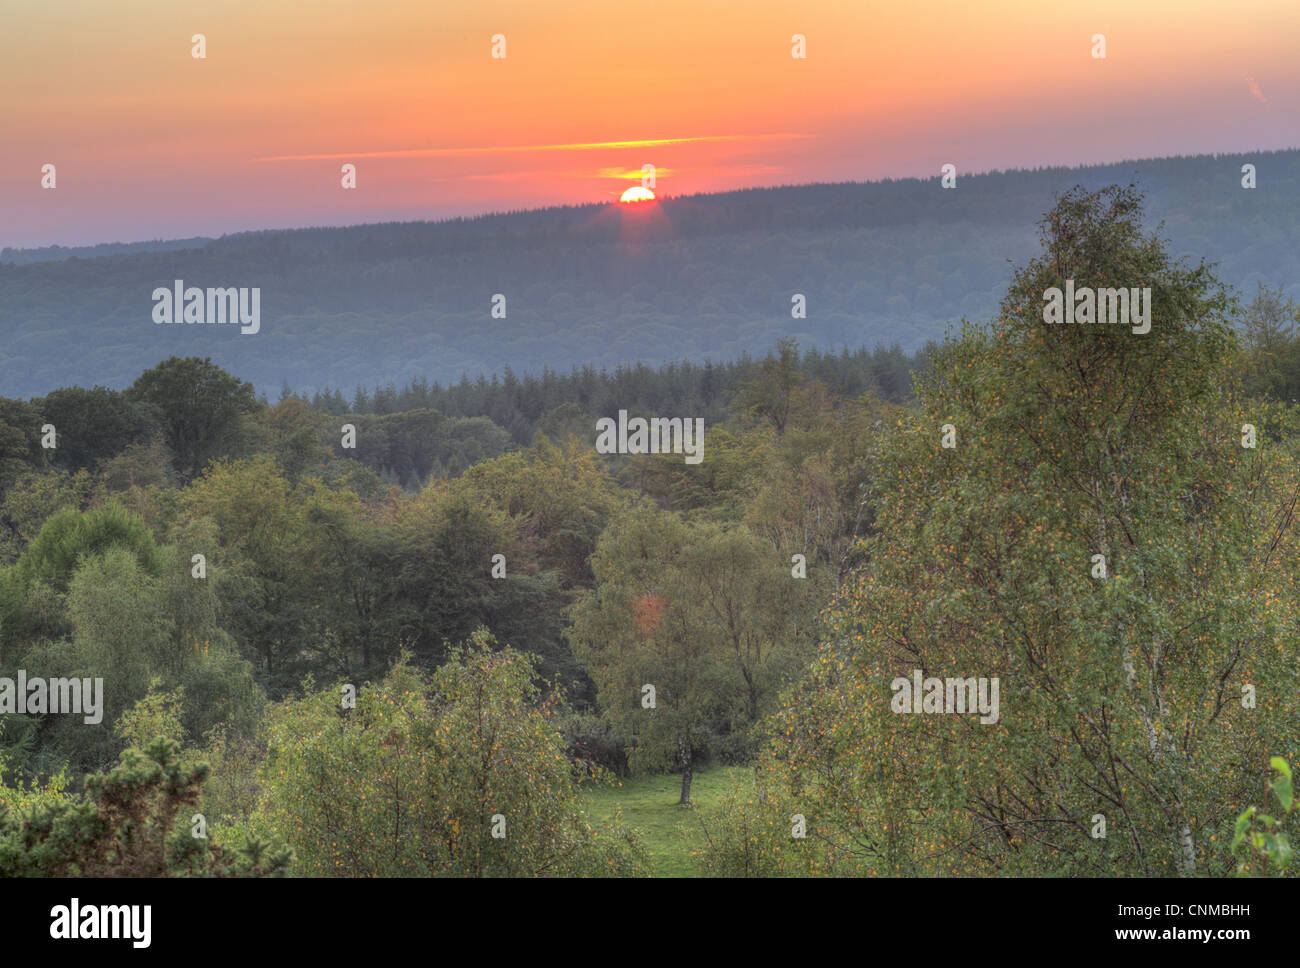 Sonnenuntergang über gemischte Laub-Nadel-Wald Lebensraum neue Fancy Sicht Wald Dean Gloucestershire England september Stockfoto